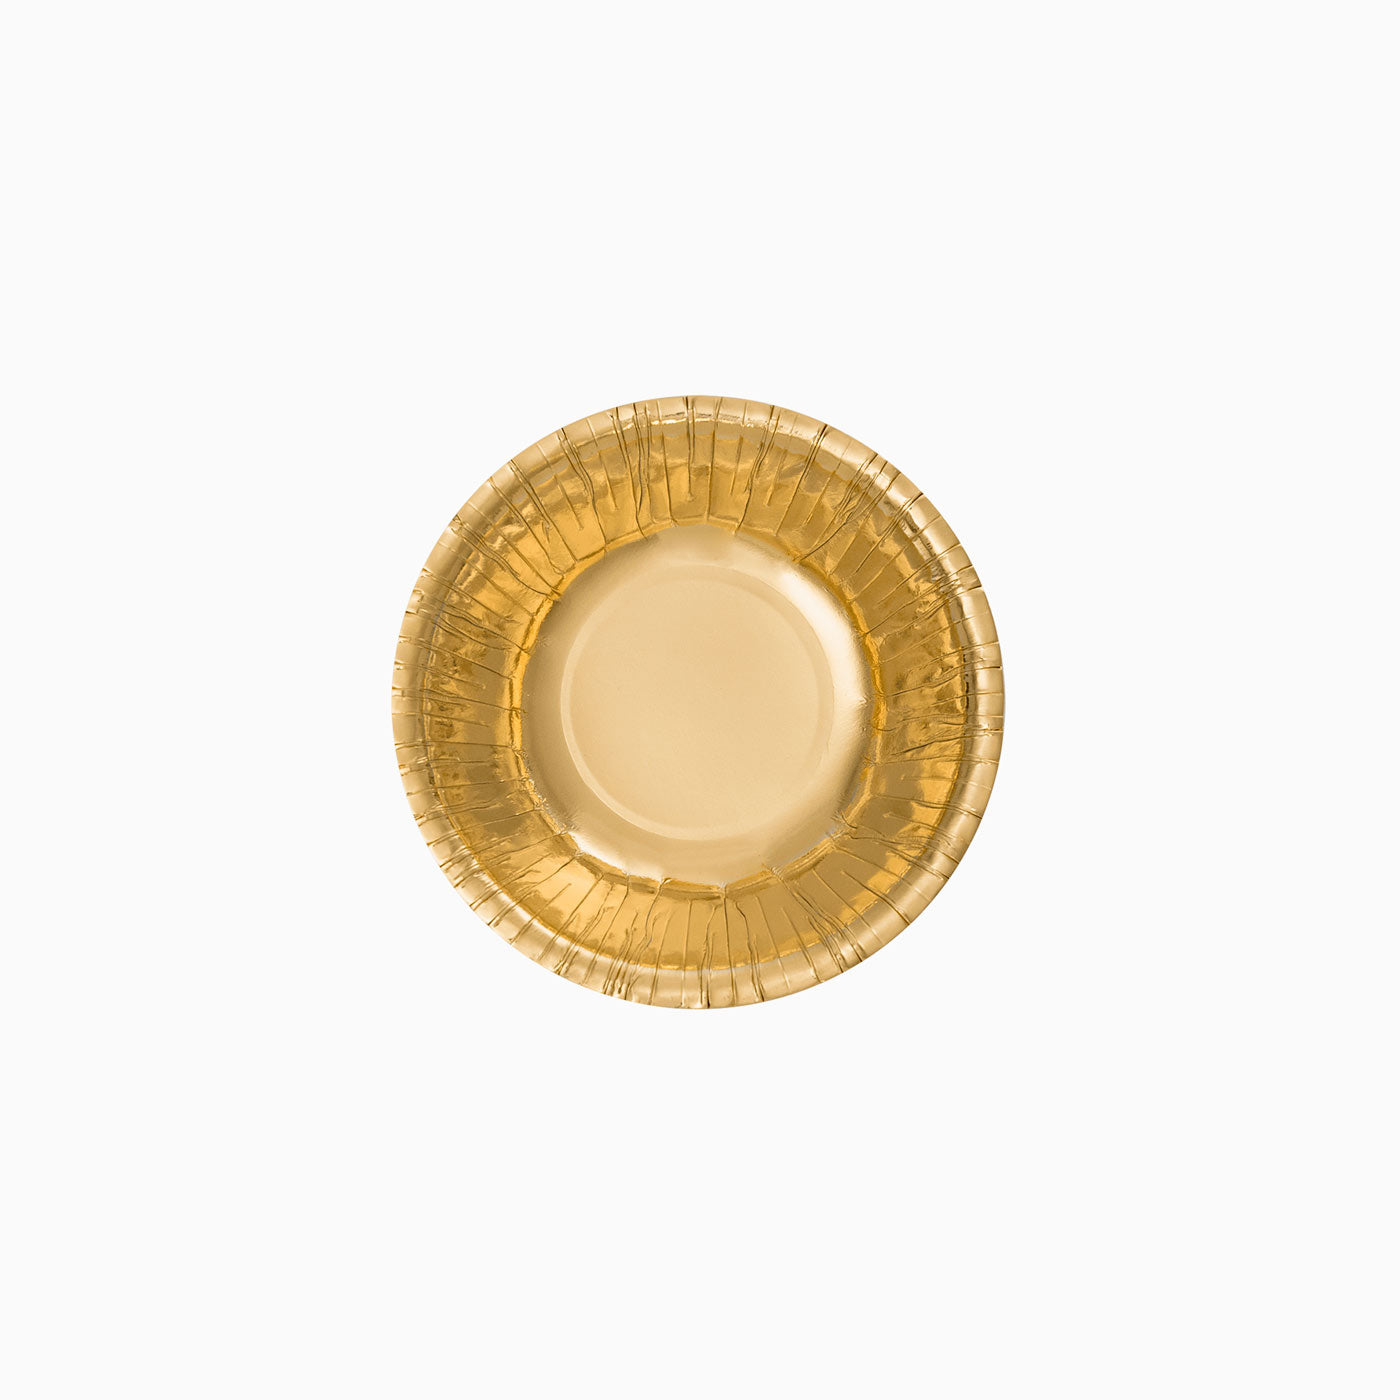 Gold metallic round bowl